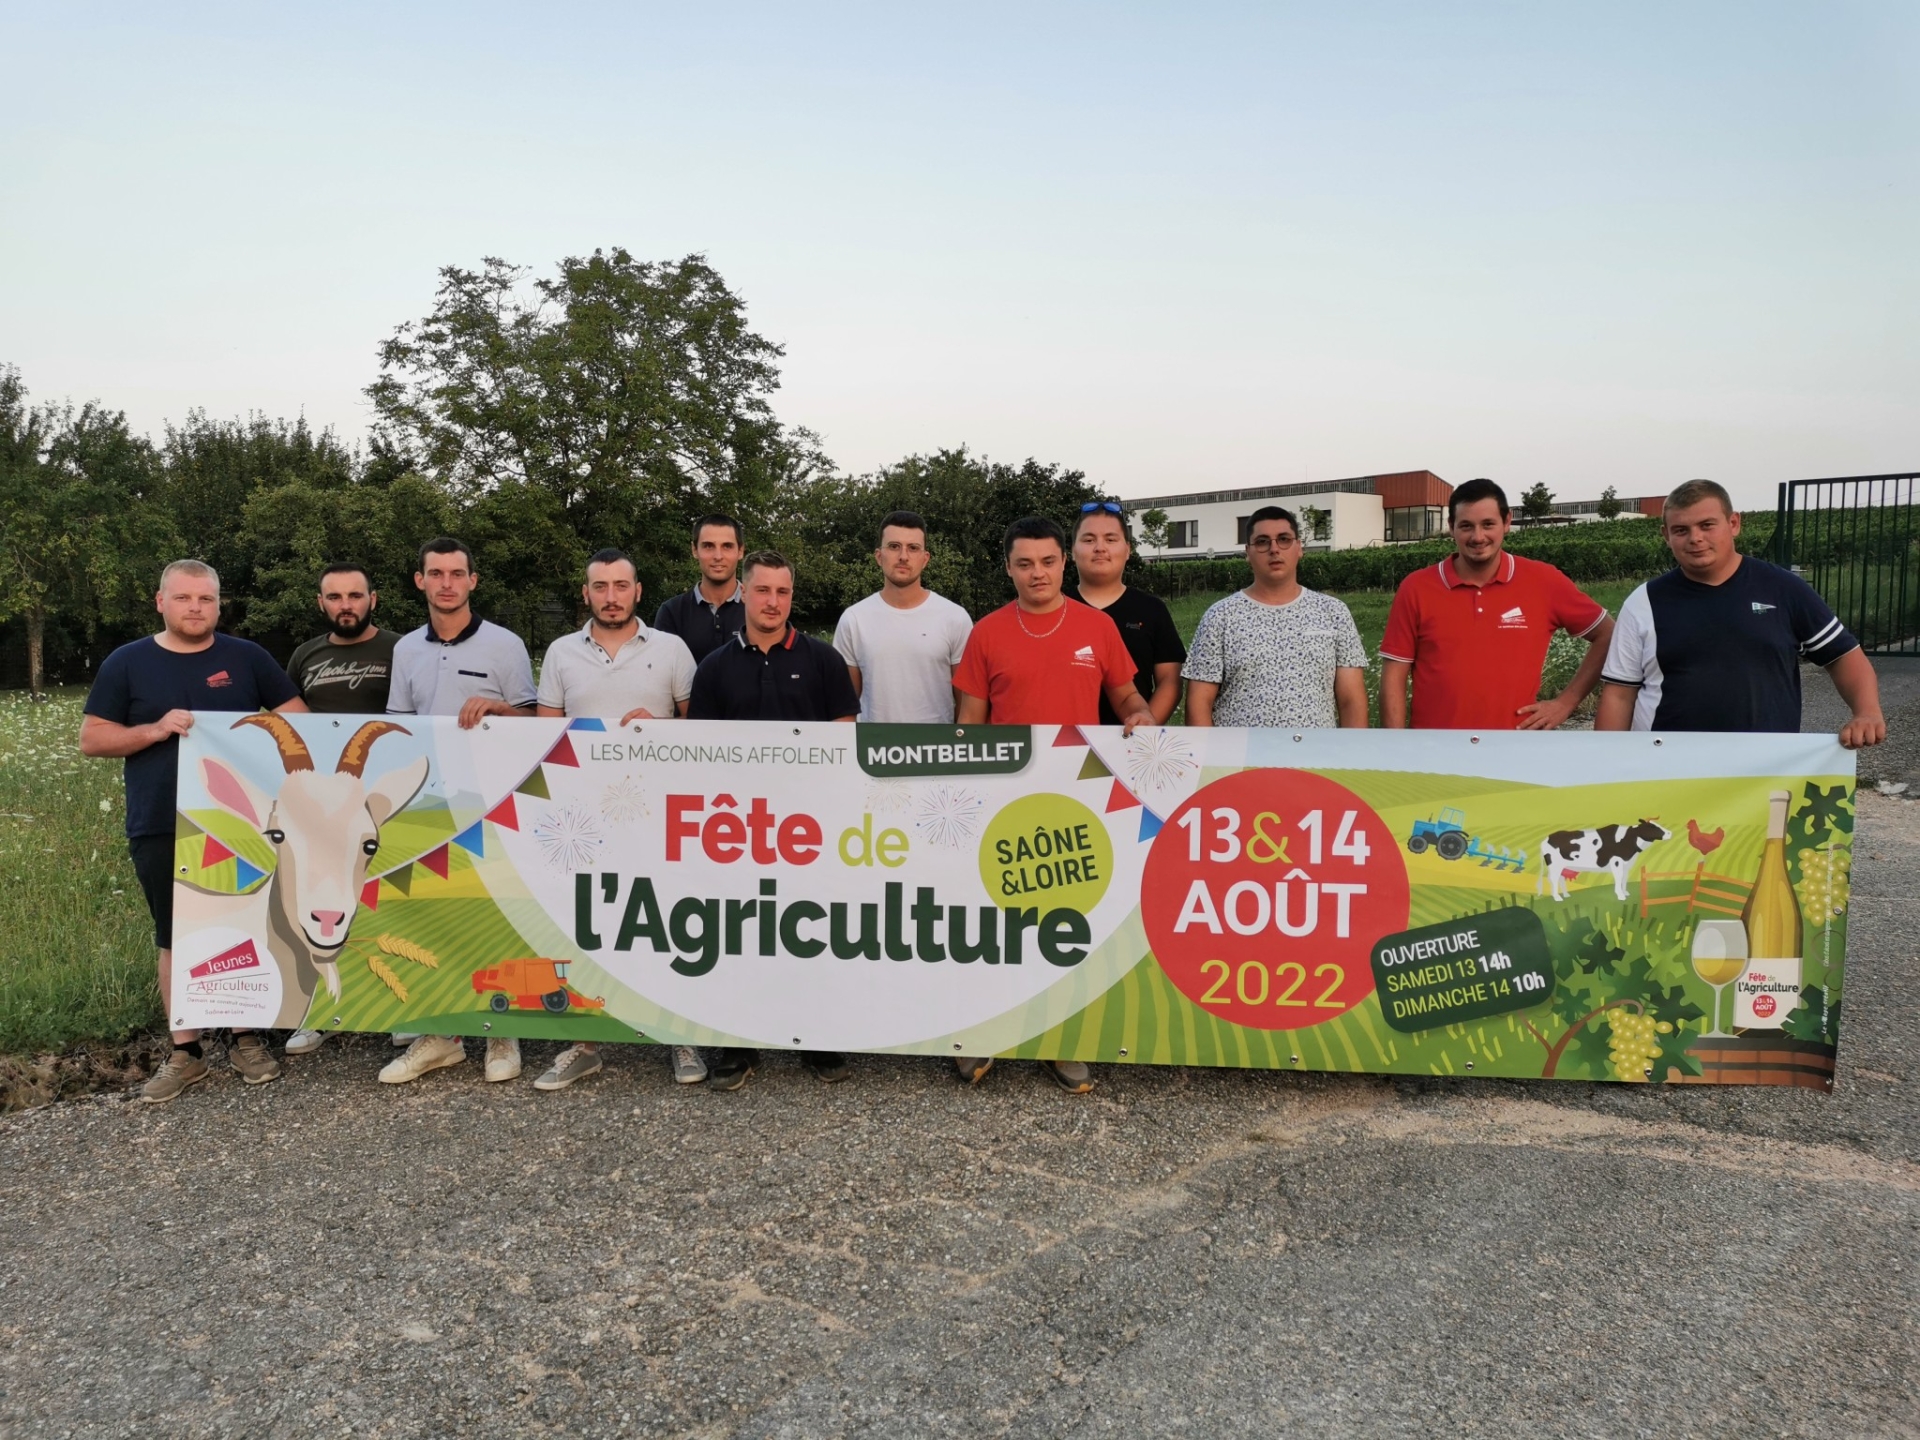 La Fête de l’agriculture 2022, c’est à Montbellet les 13 et 14 août